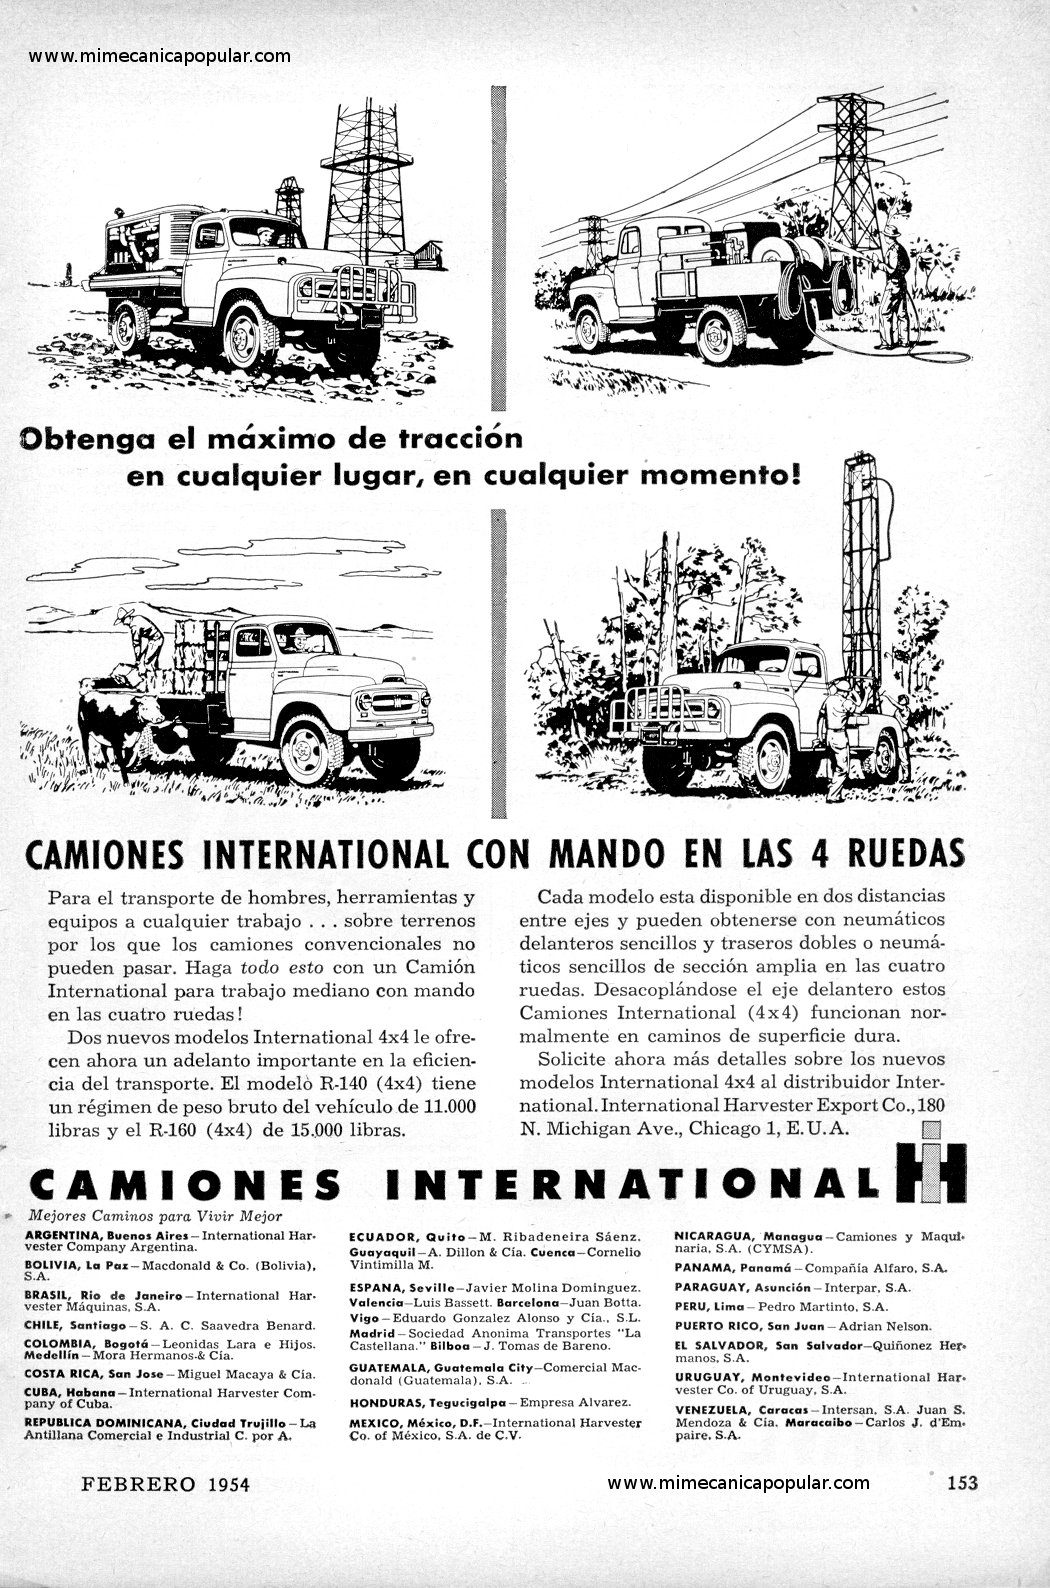 Publicidad - Camiones International - Febrero 1954